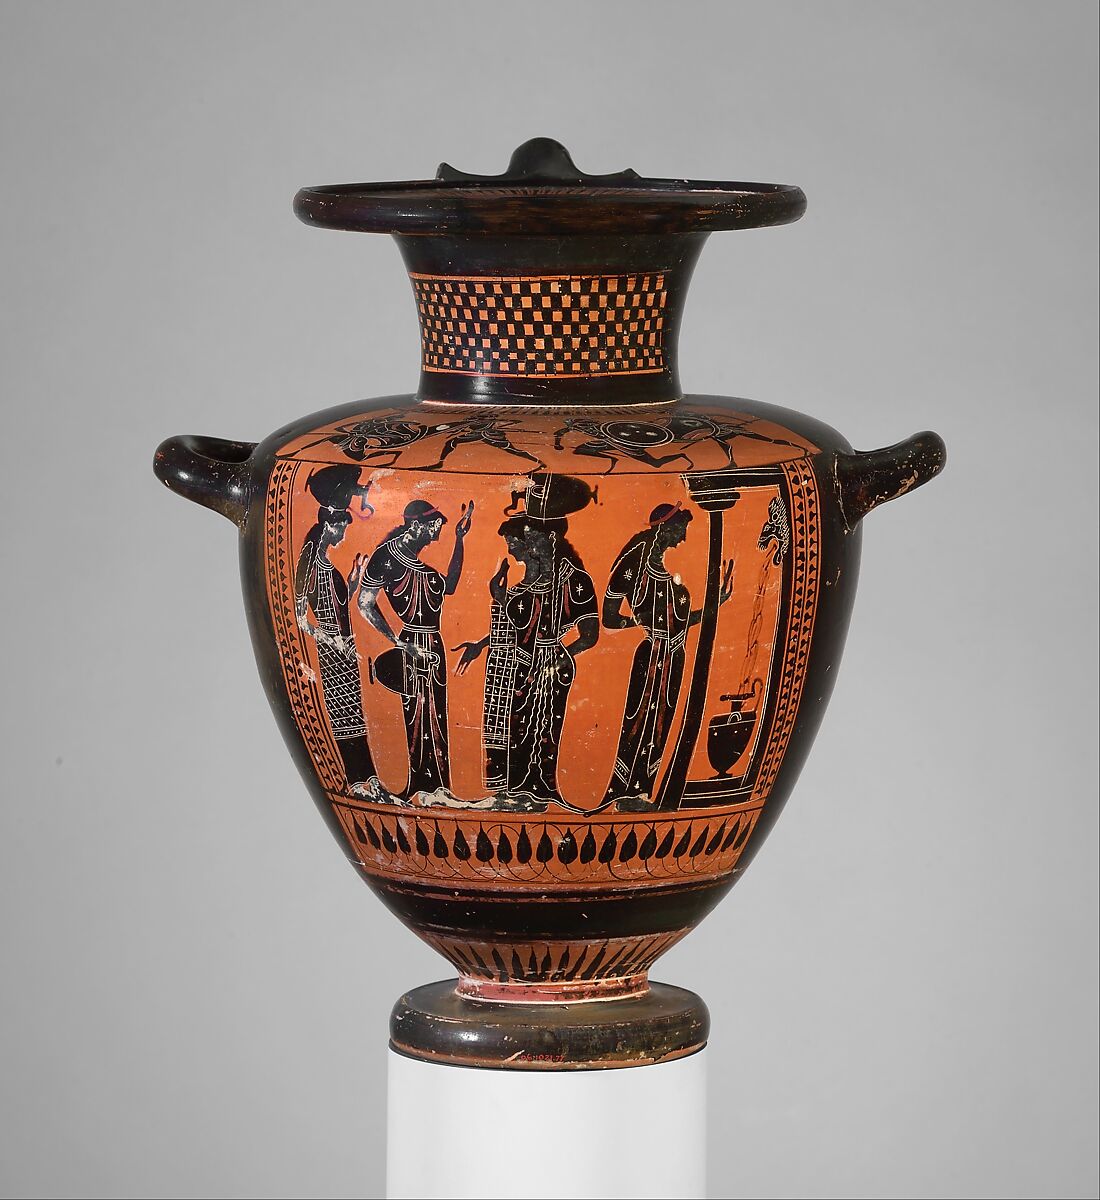 Terracotta hydria (water jar), Attributed to the Class of Hamburg 1917.477, Terracotta, Greek, Attic 